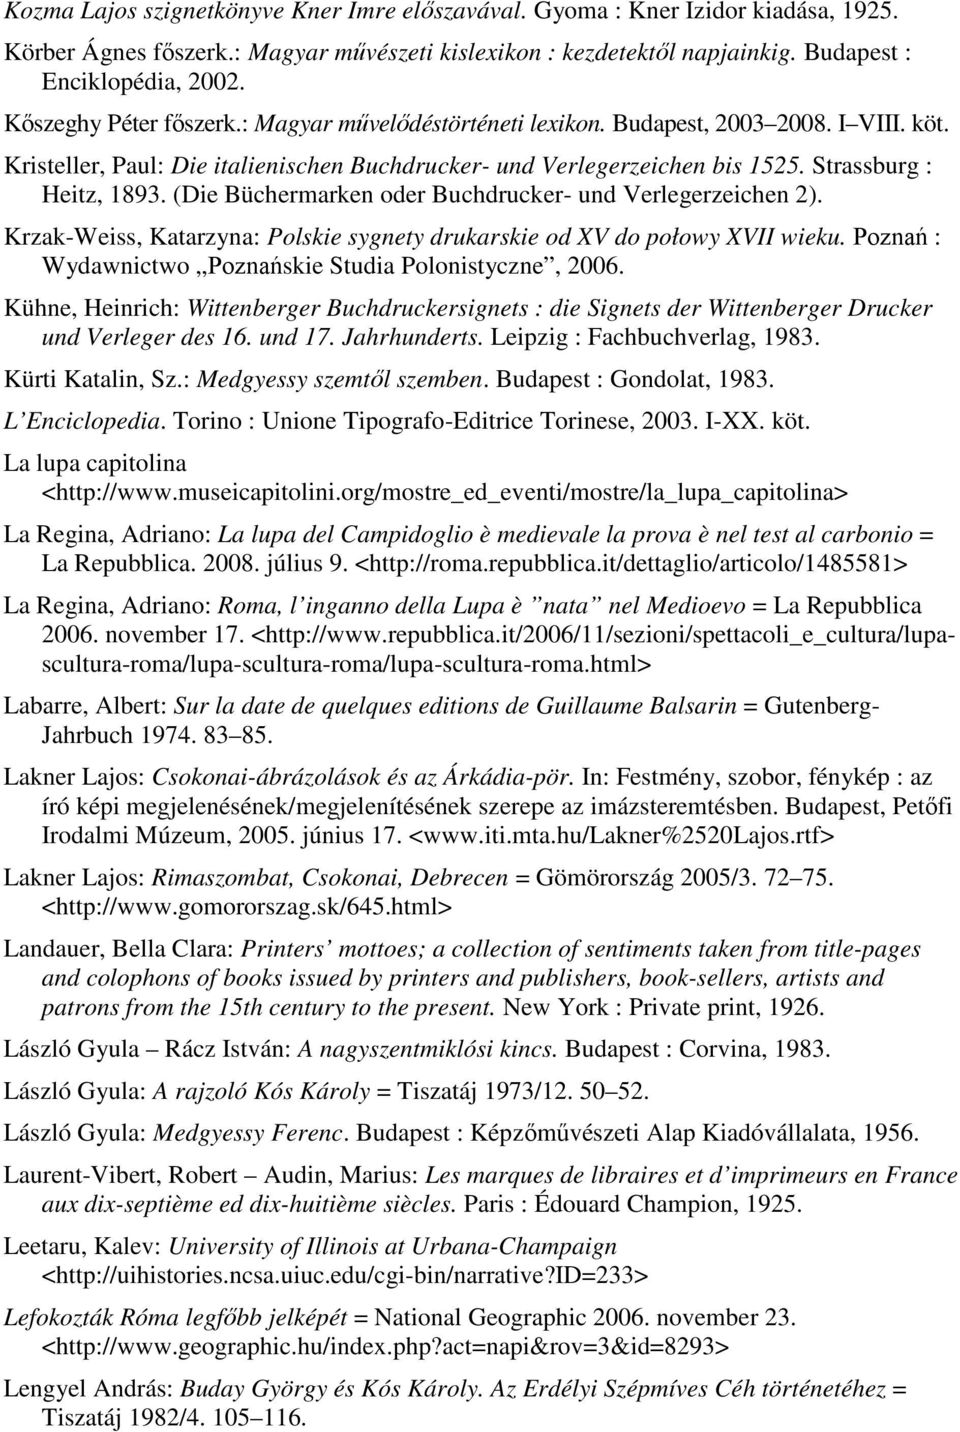 (Die Büchermarken oder Buchdrucker- und Verlegerzeichen 2). Krzak-Weiss, Katarzyna: Polskie sygnety drukarskie od XV do połowy XVII wieku. Poznań : Wydawnictwo Poznańskie Studia Polonistyczne, 2006.